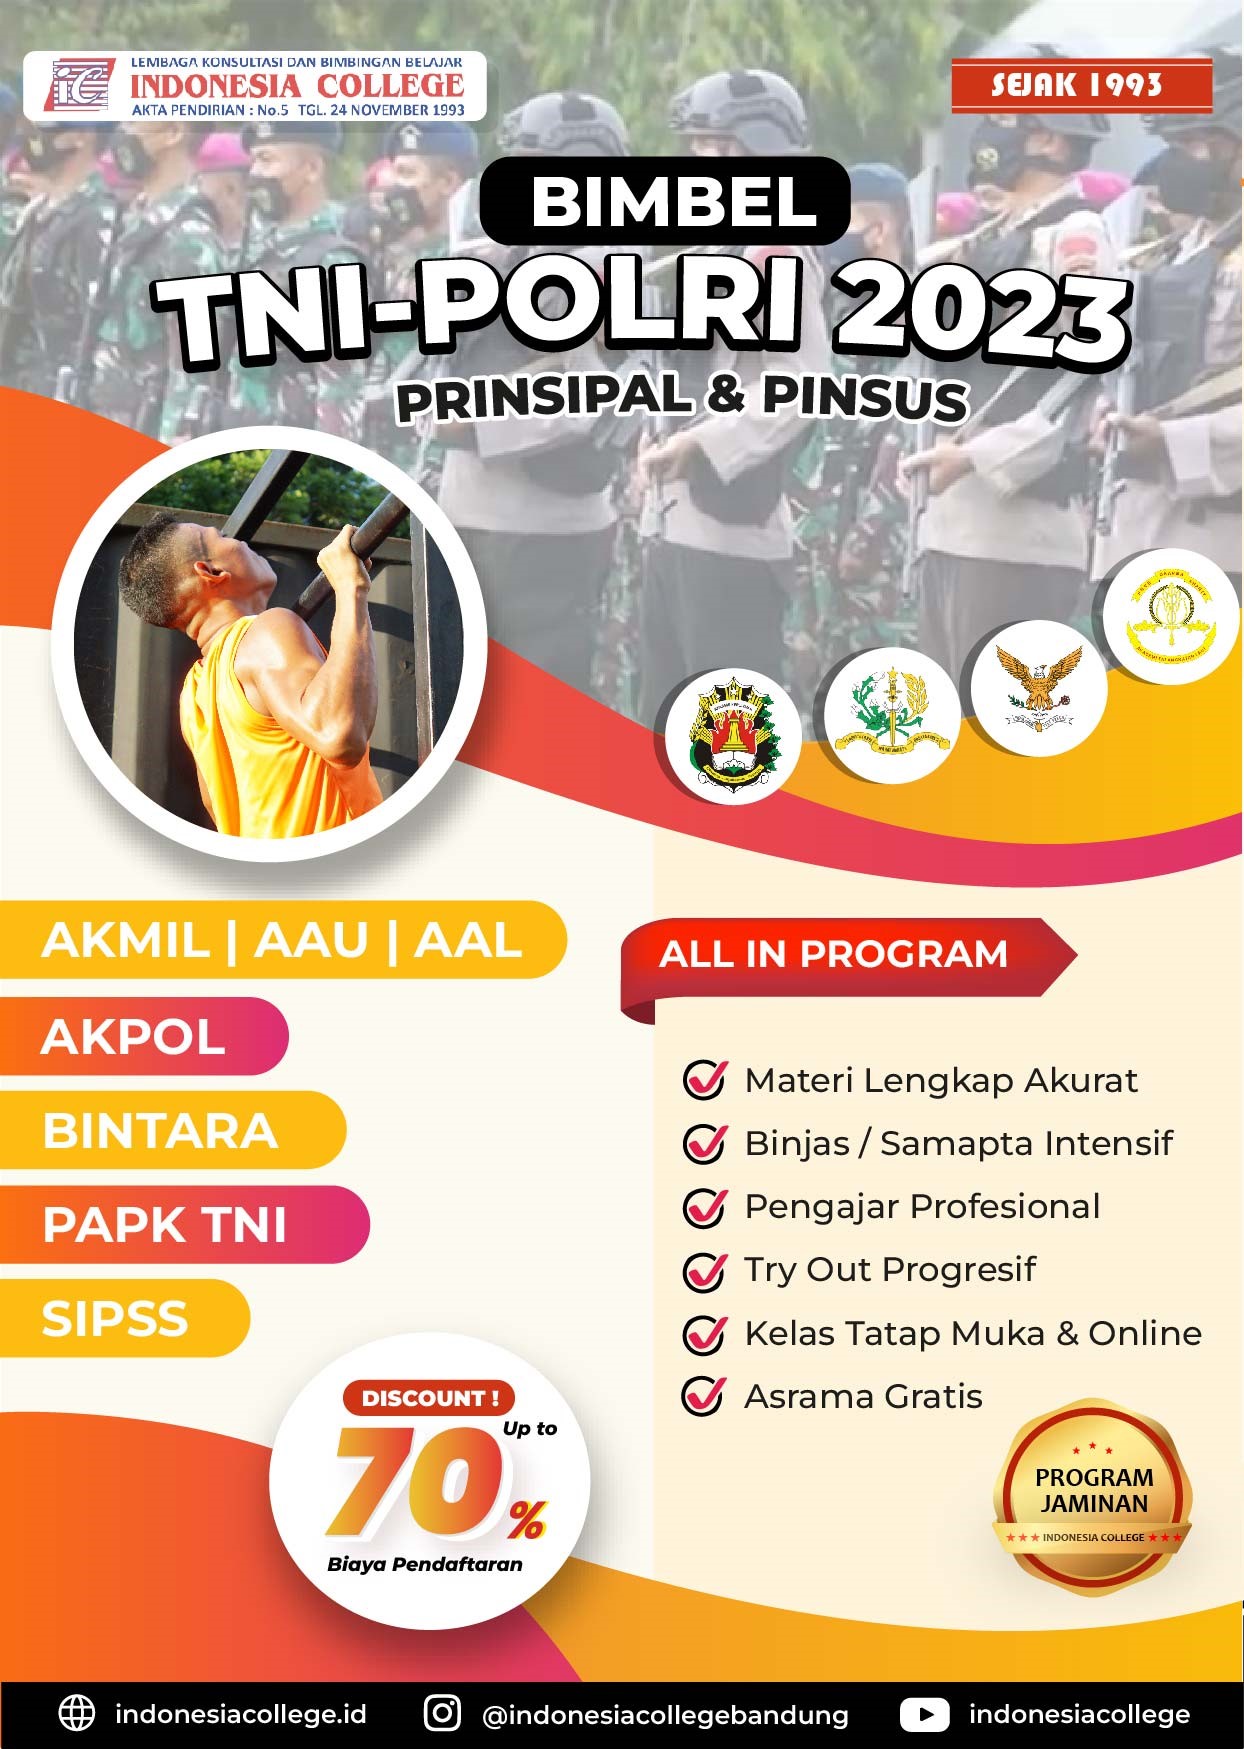 Bimbel TNI-POLRI 2023